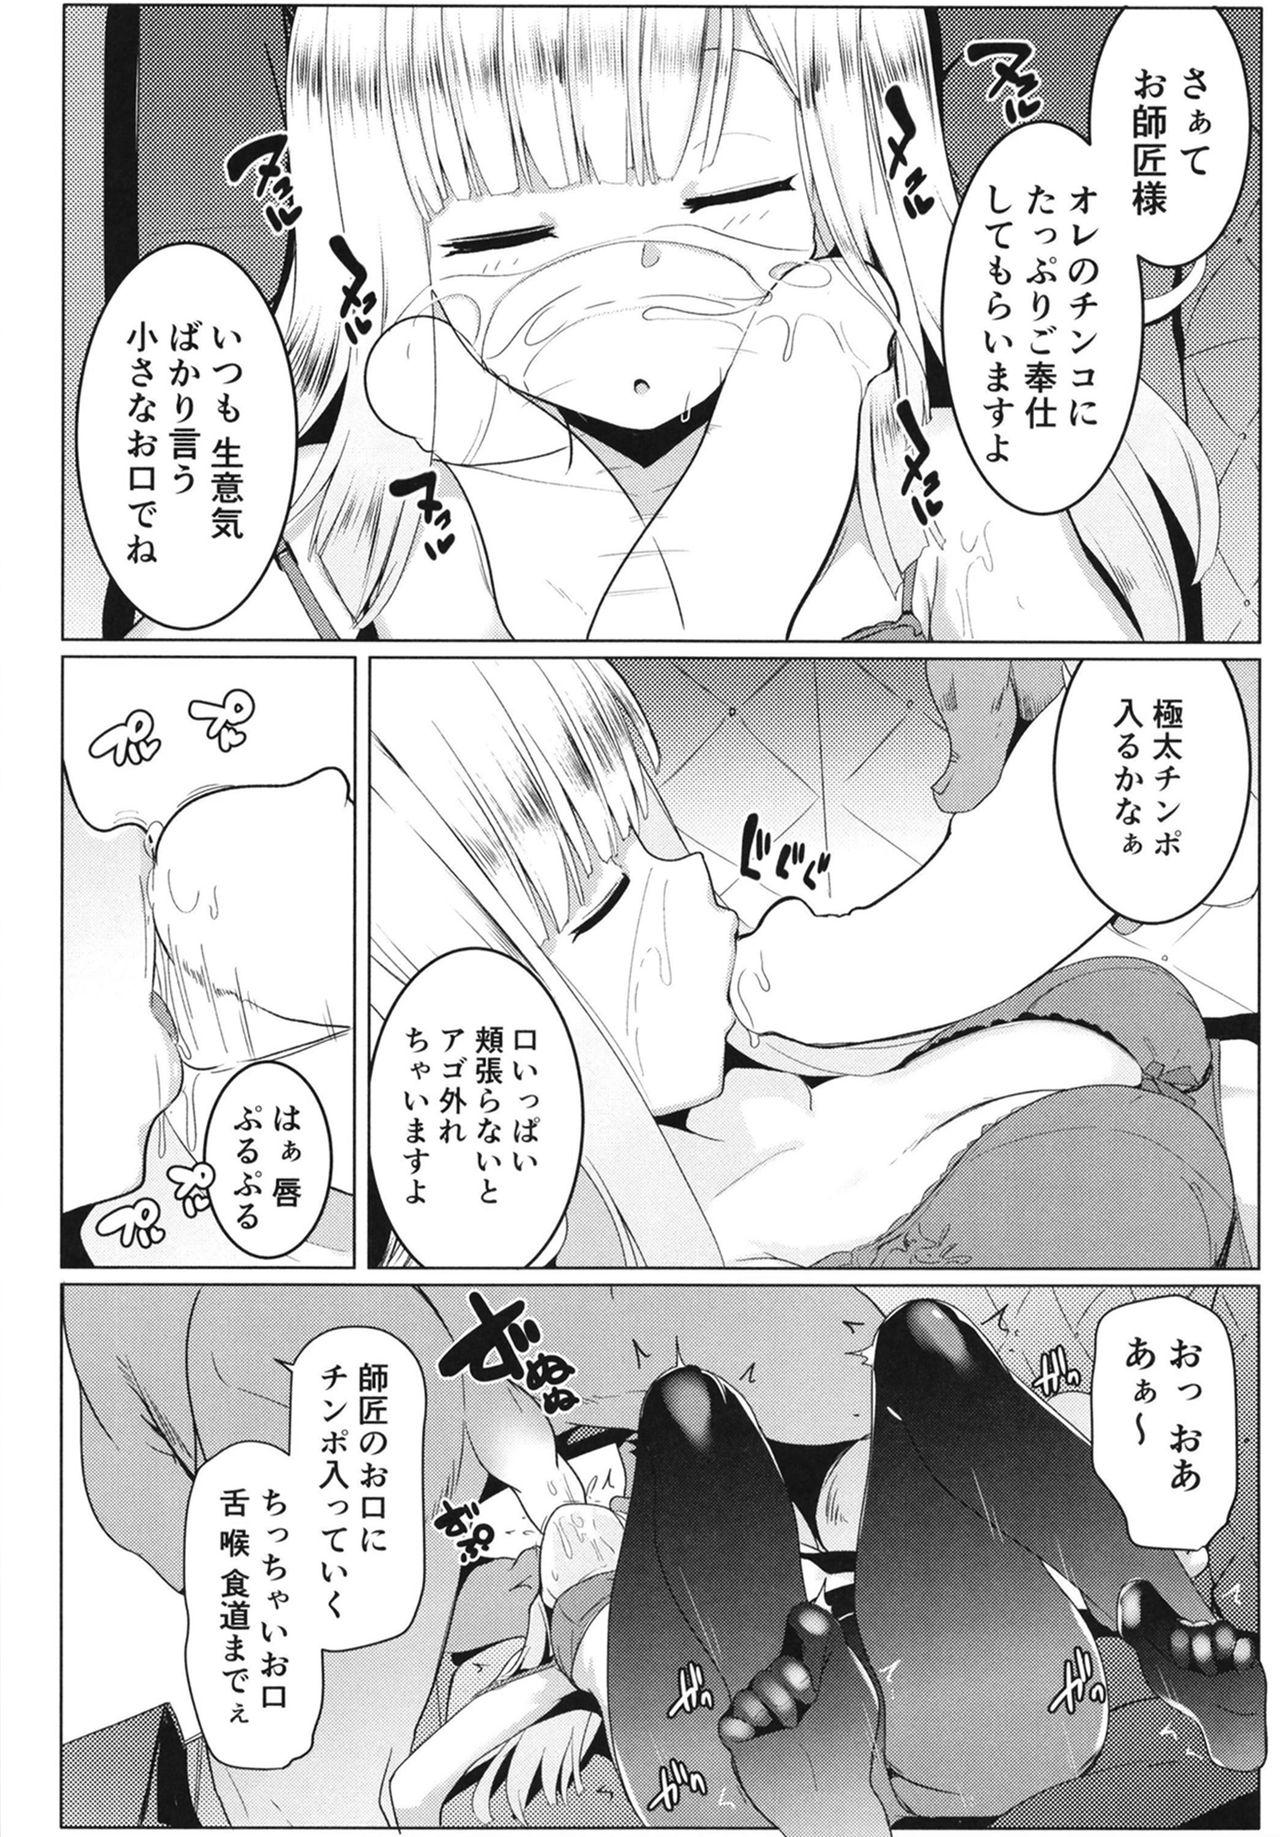 Lingerie Neoki no Shishou wa Tonikaku Eroi - Fate grand order Gay Baitbus - Page 10